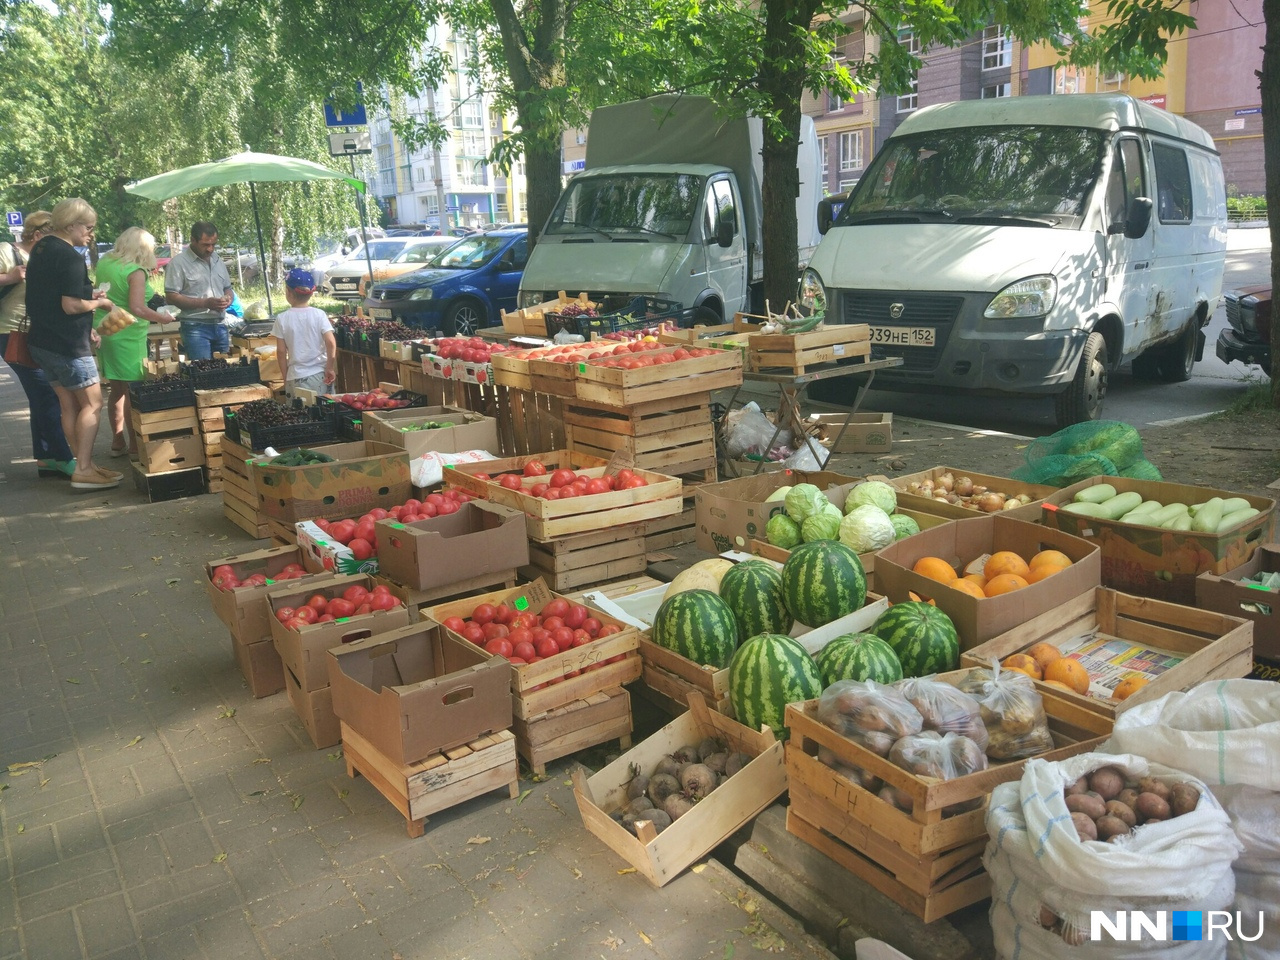 Так теперь выглядит торговля фруктами и
овощами